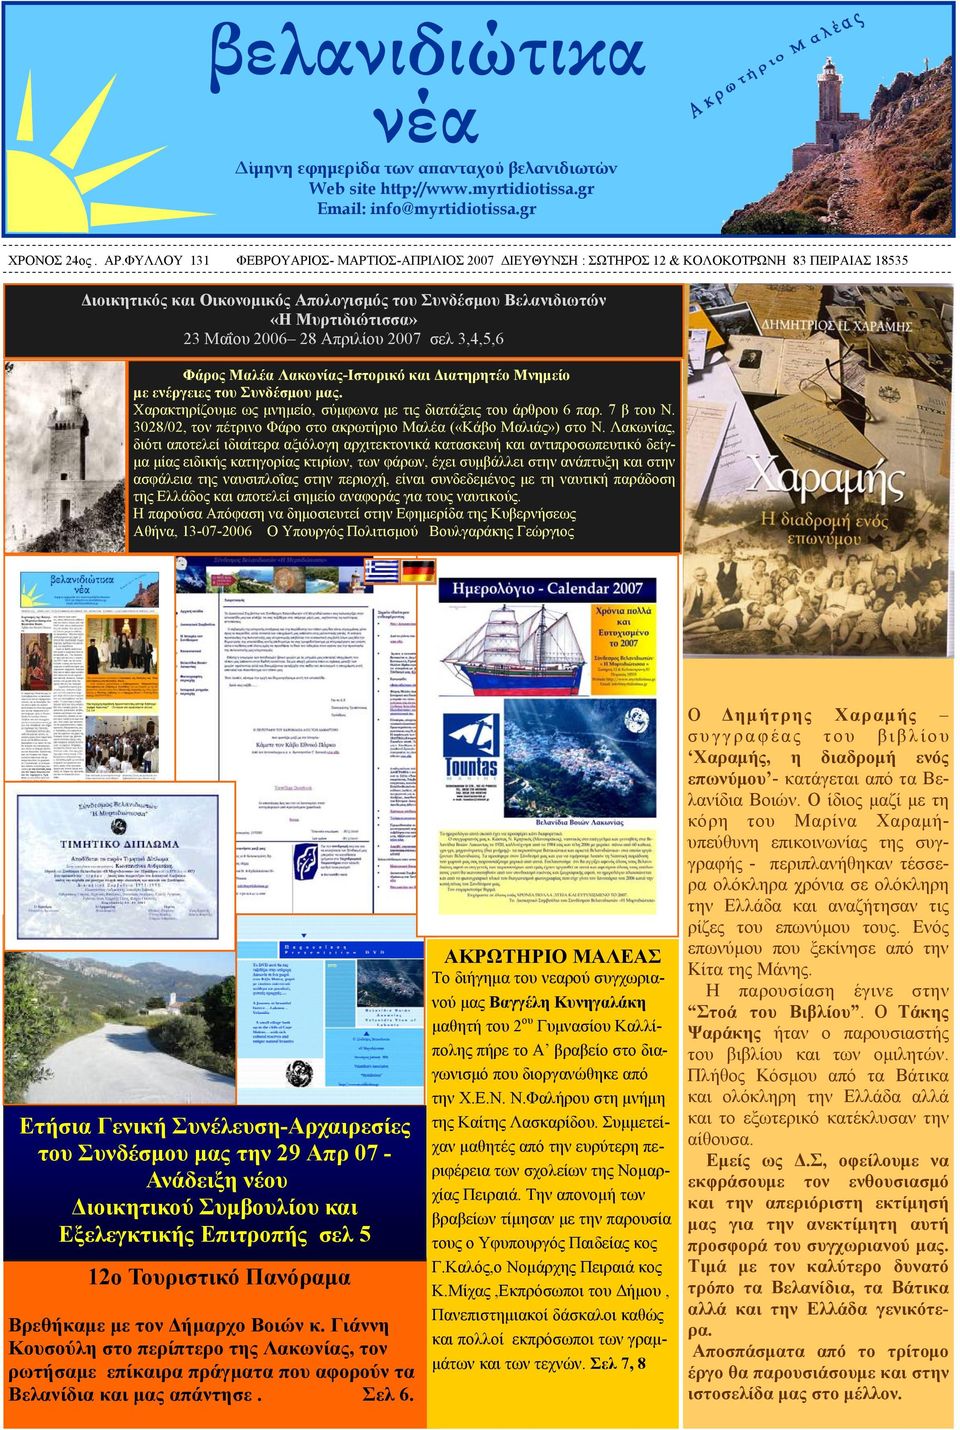 28 Απριλίου 2007 σελ 3,4,5,6 Φάρος Μαλέα Λακωνίας-Ιστορικό και Διατηρητέο Μνημείο με ενέργειες του Συνδέσμου μας. Χαρακτηρίζουμε ως μνημείο, σύμφωνα με τις διατάξεις του άρθρου 6 παρ. 7 β του Ν.